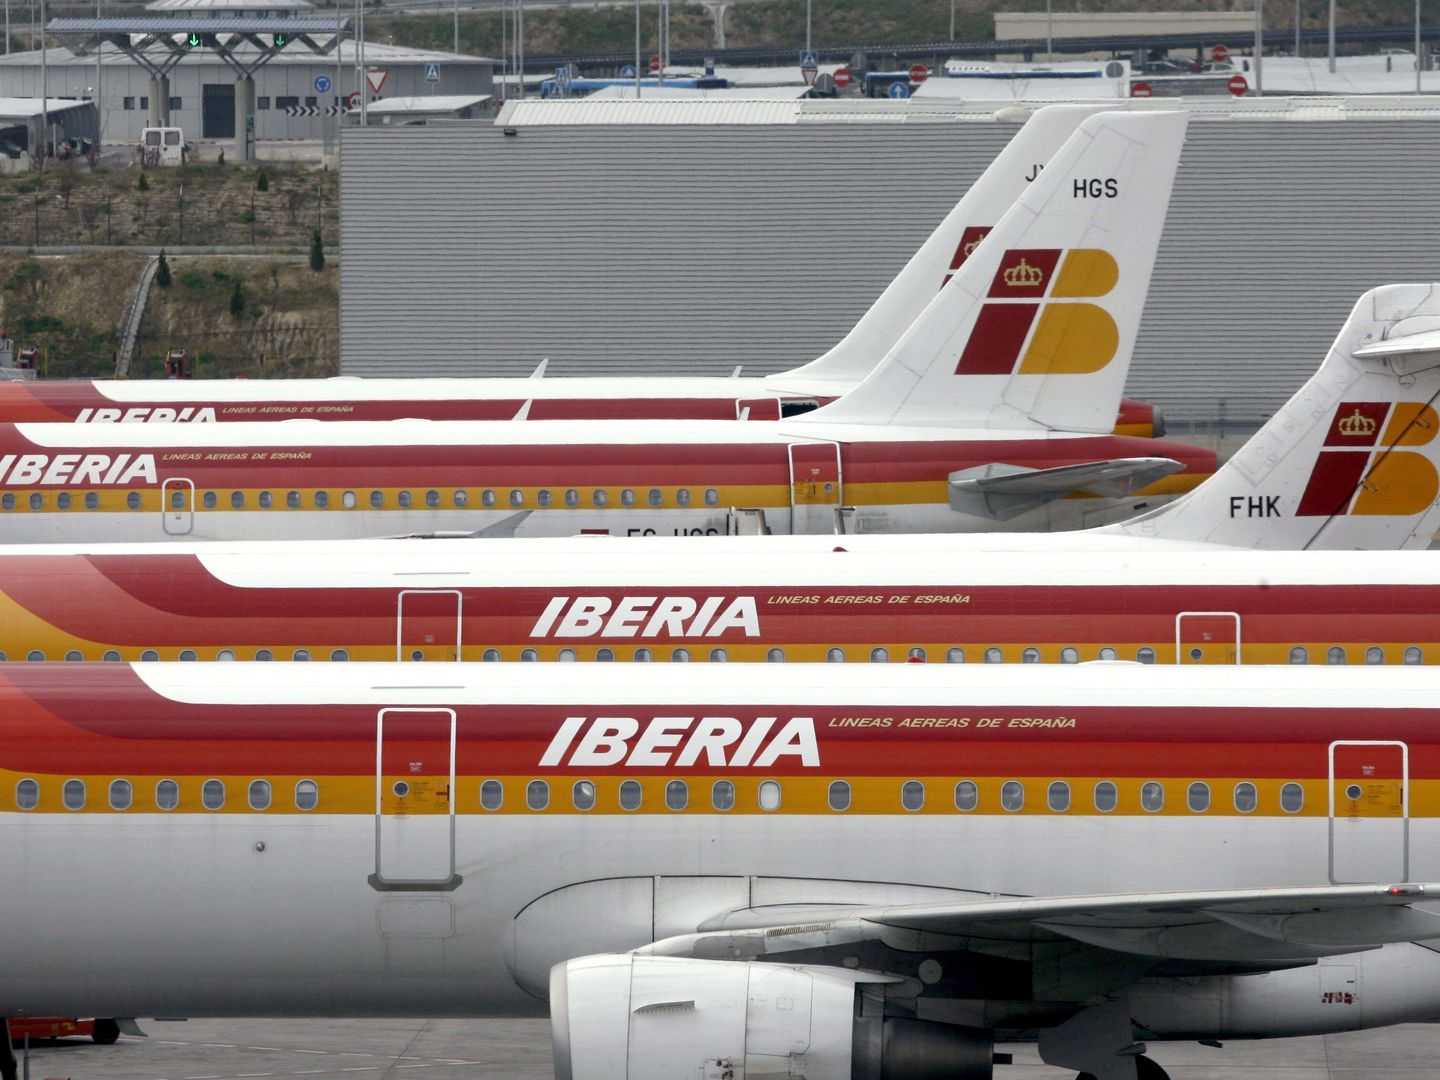 Iberia también está explorando el canal voz.